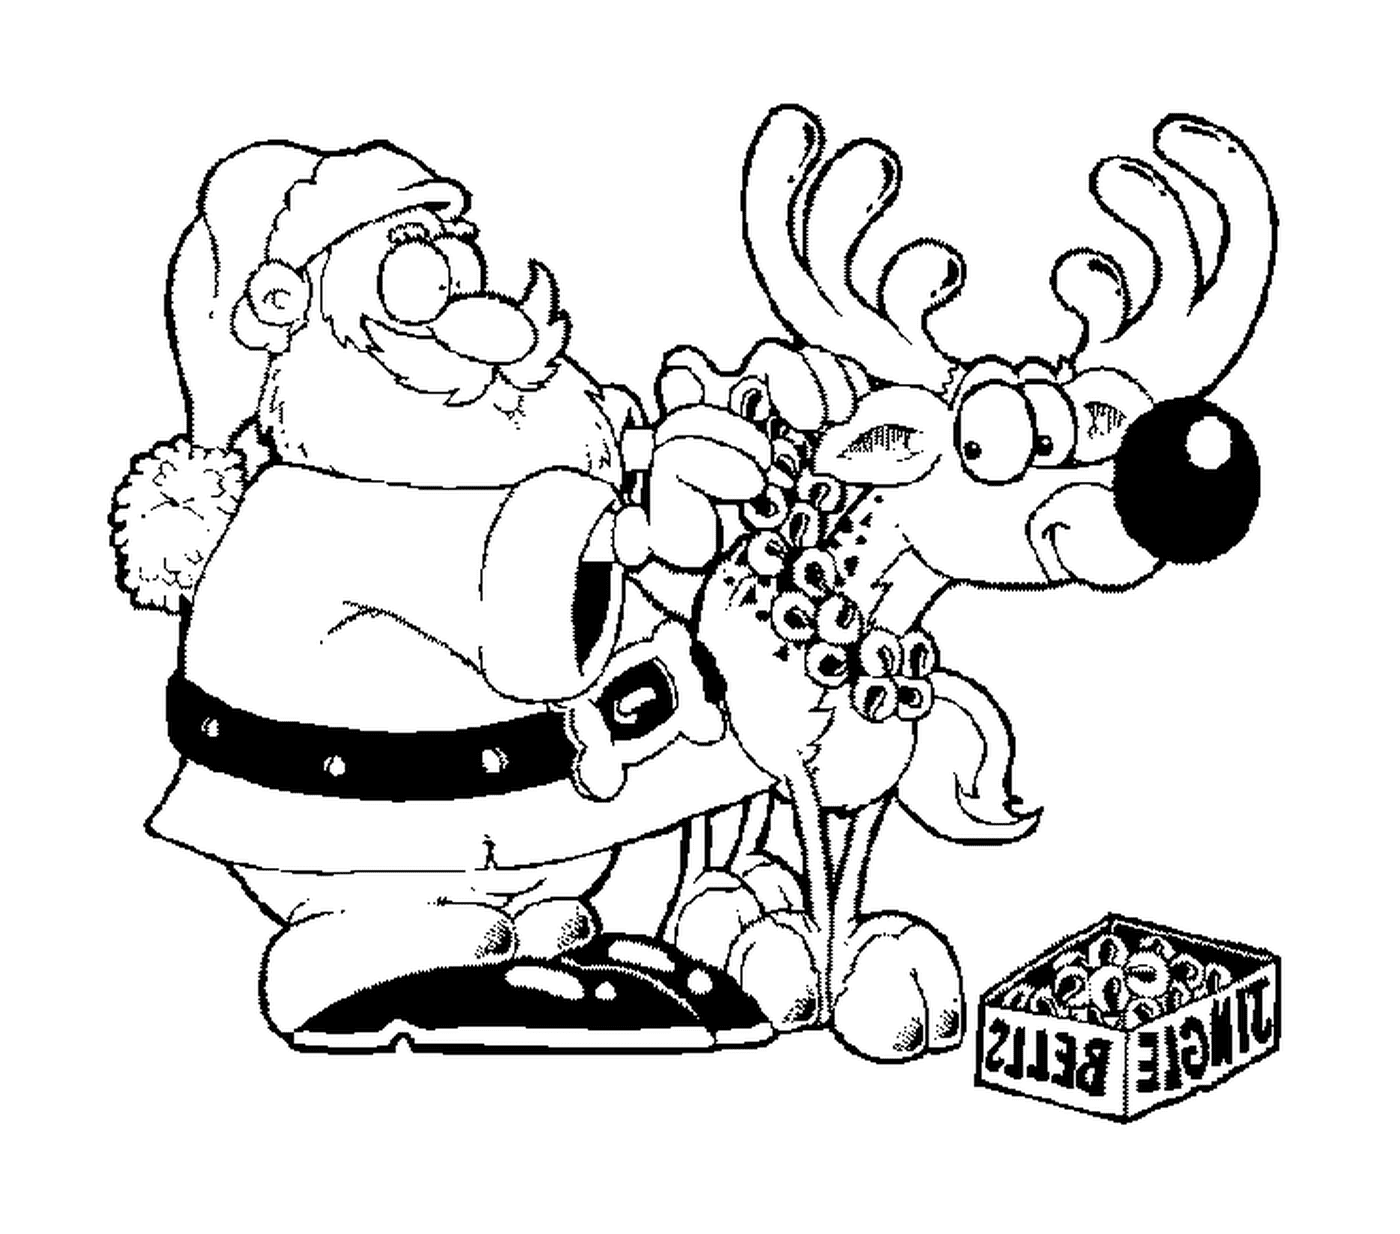  Санта вешает колокольчики на оленей 